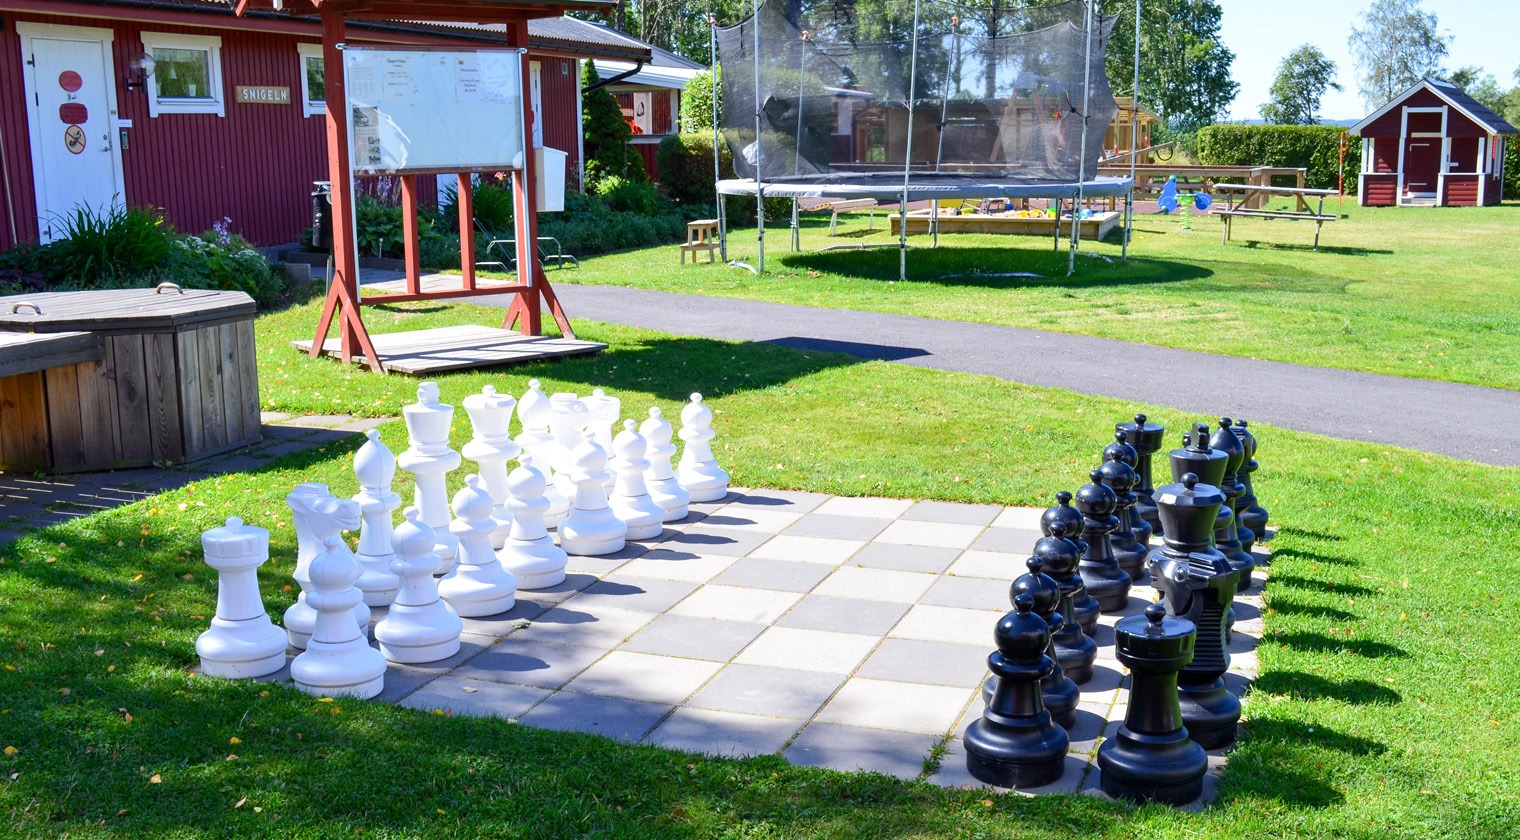 Ett stort schack står utanför en röd byggnad på campingen - Caravan Club Borensberg.